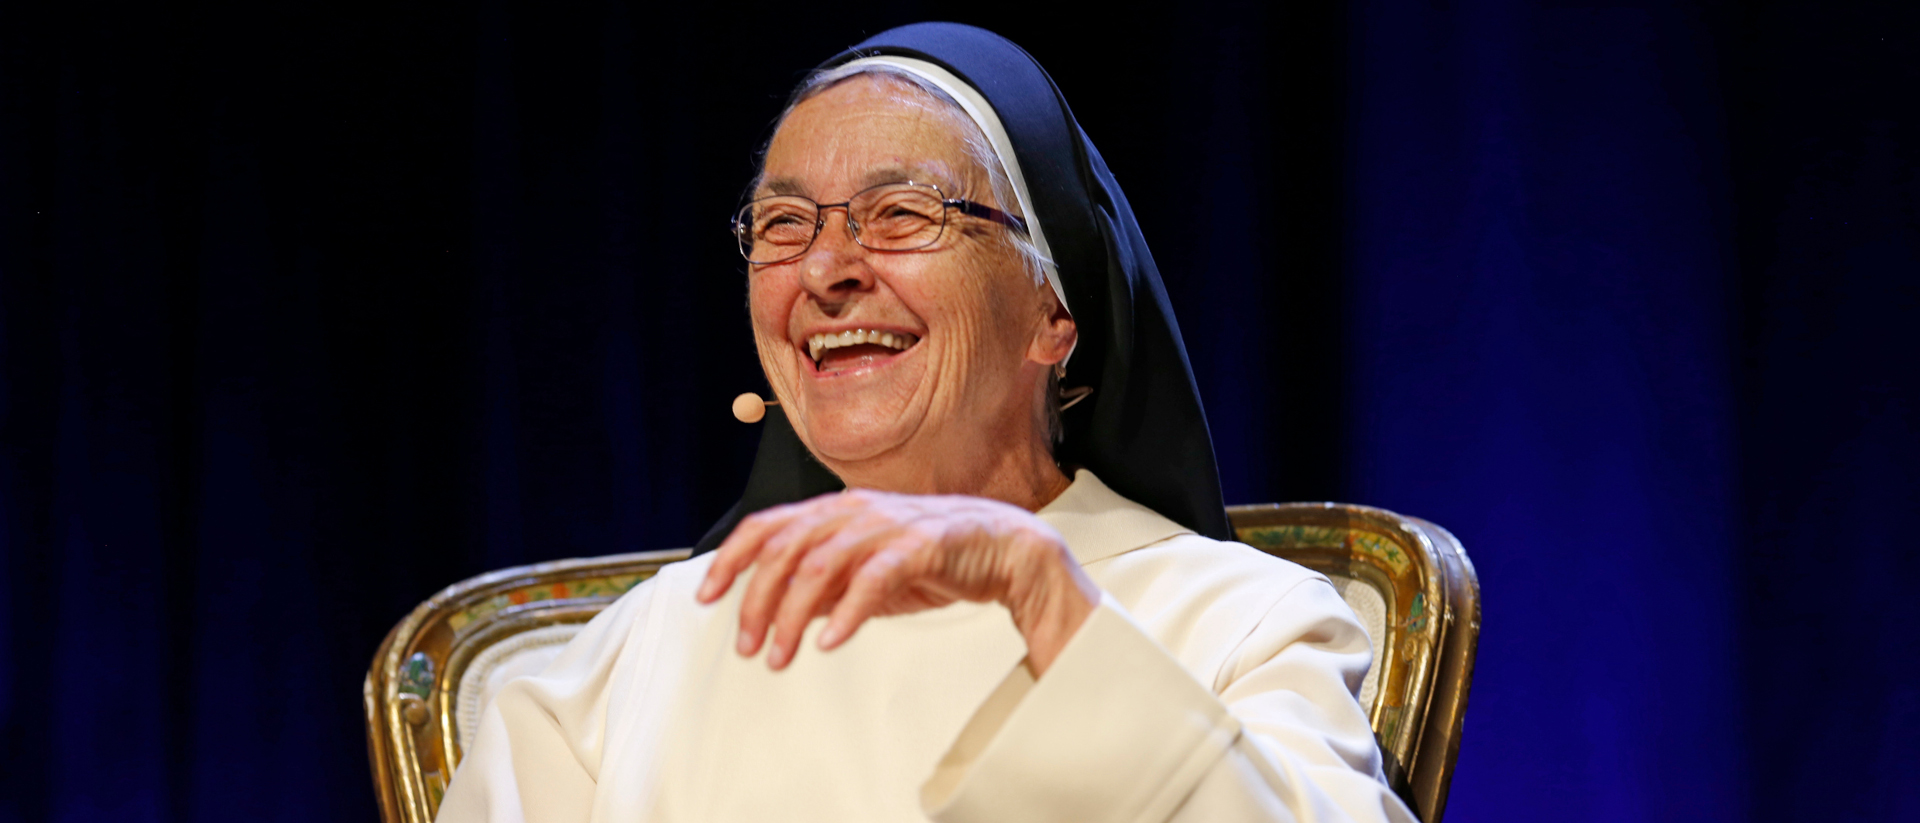 Schwester Ingrid Grave an der Premiere des "Heiligen Bernhard" im Bernhardtheater Zürich am 20. Juni 2021.